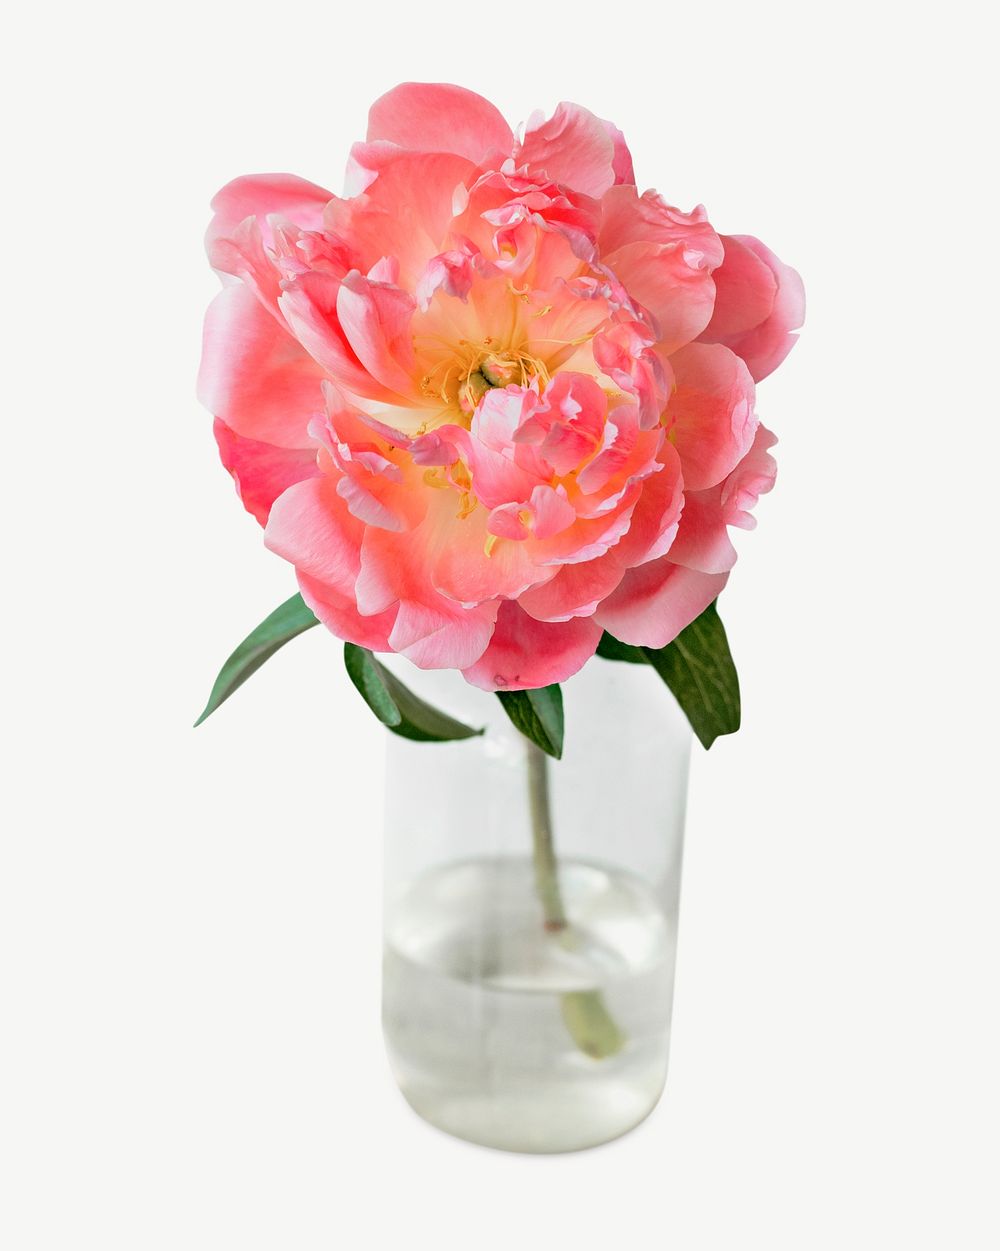 Flower vase glass psd